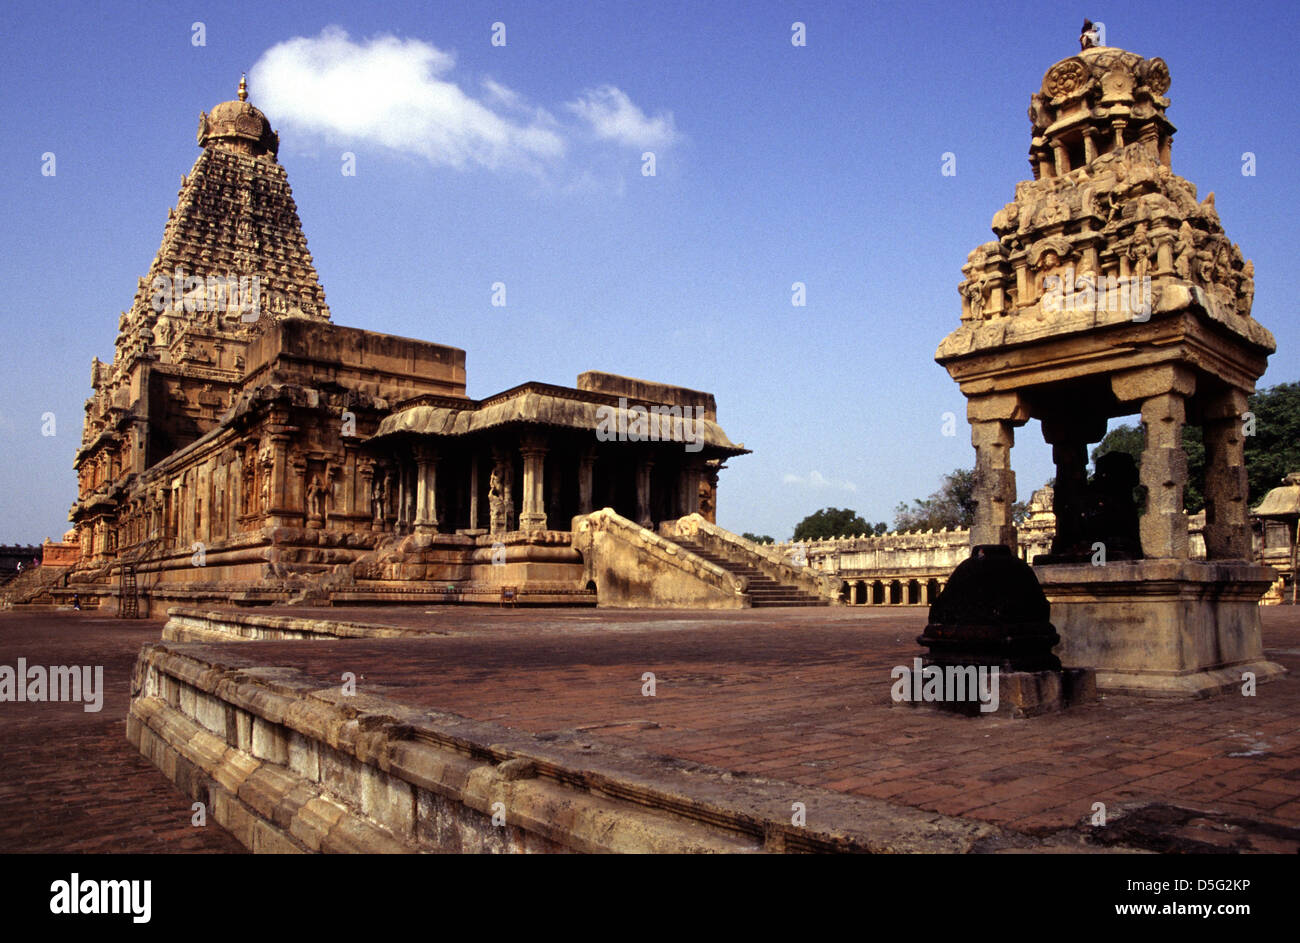 Vista del templo hindú de Brihadisvara Rajarajesvaram o Peruvudaiyar Kovil dedicado a Shiva ubicado en Thanjavur en el estado indio de Tamil Nadu. India. El templo es uno de los templos más grandes de la India y es un ejemplo de la arquitectura tamil durante el período Chola construido por Raja Raja Chola I y completado en 1010 CE, Foto de stock